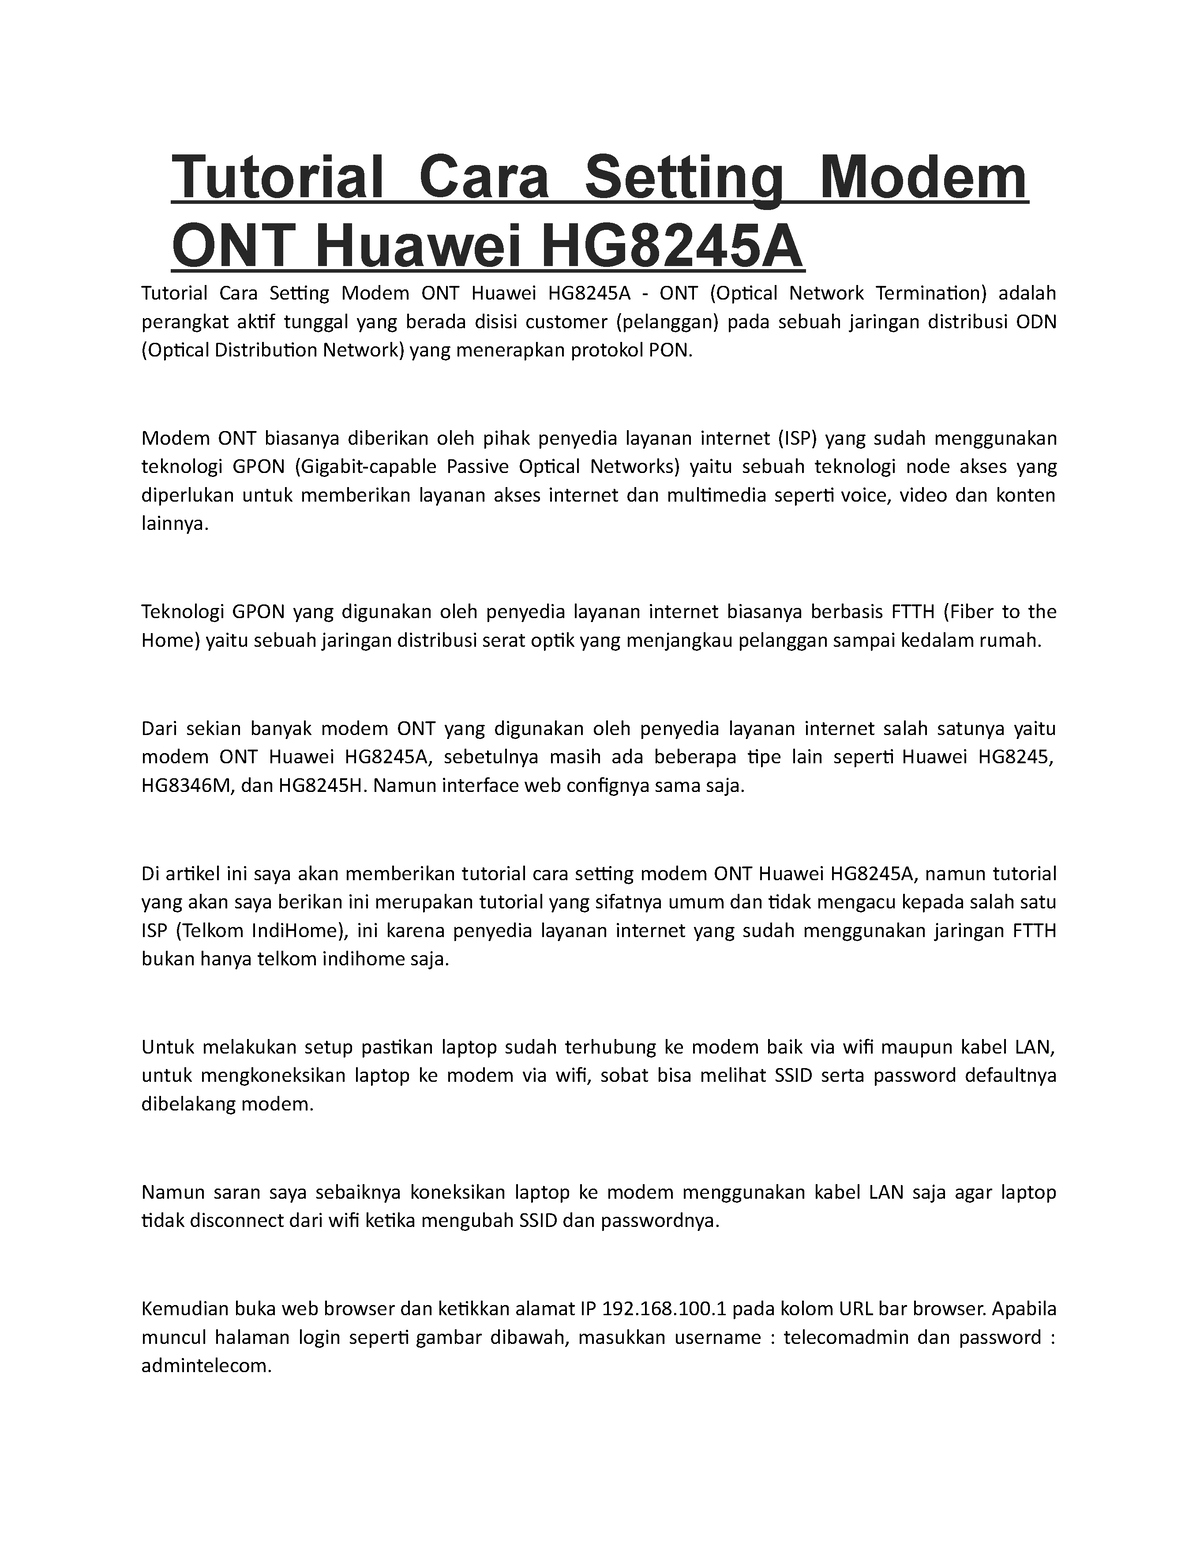 Tutorial Cara Setting Modem Ont Huawei Hg8245a Modem Ont Biasanya Diberikan Oleh Pihak 8520